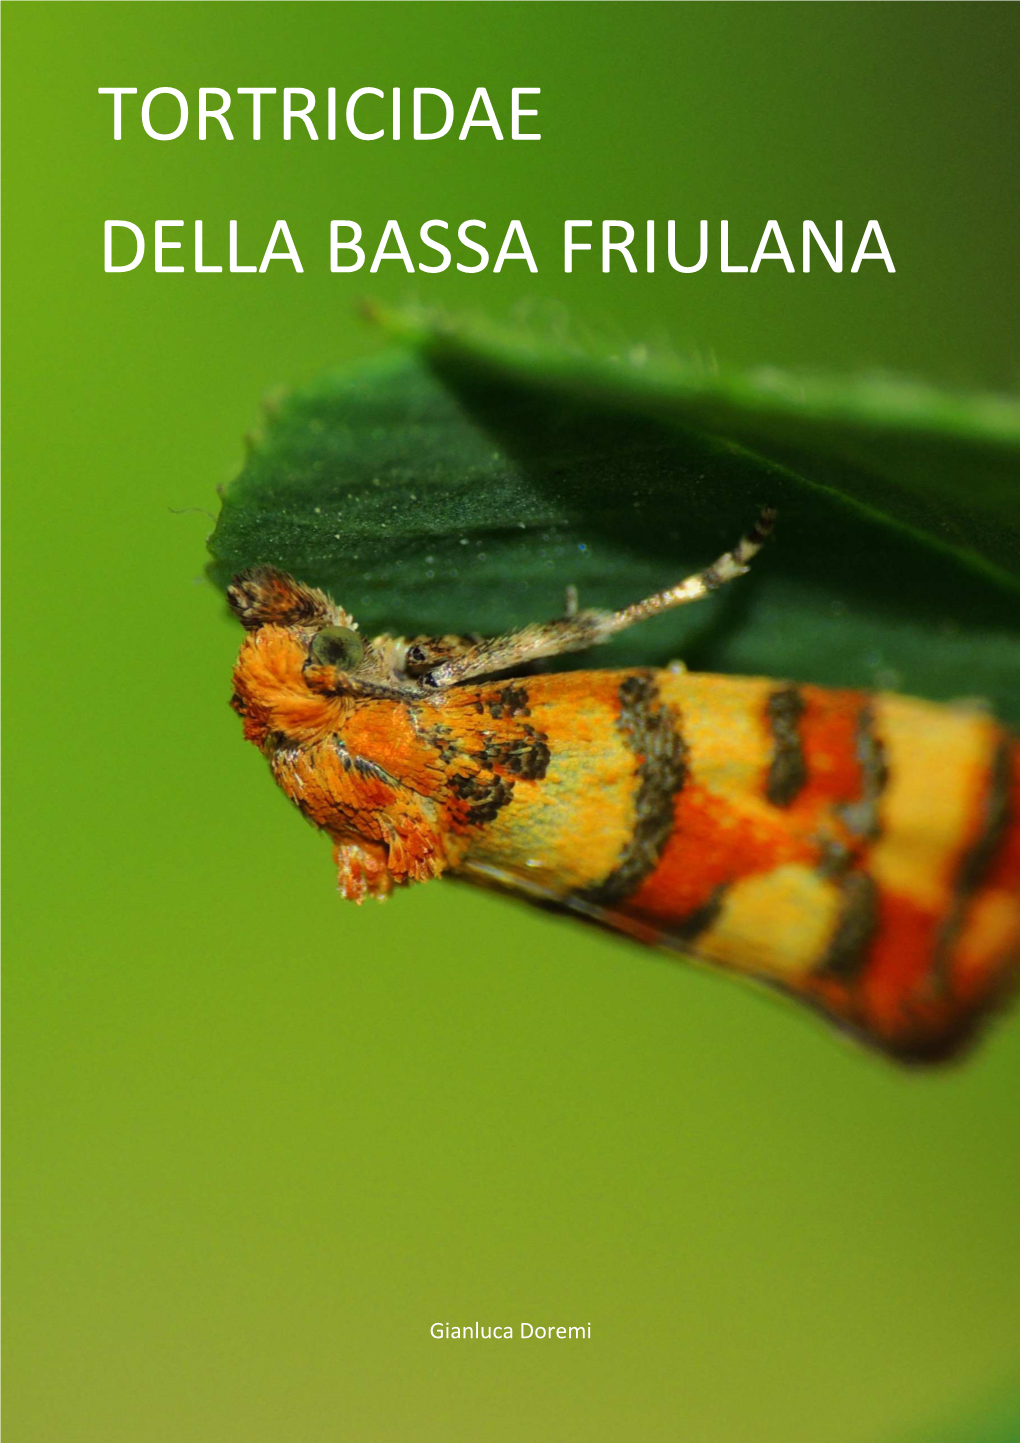 Tortricidae Della Bassa Friulana